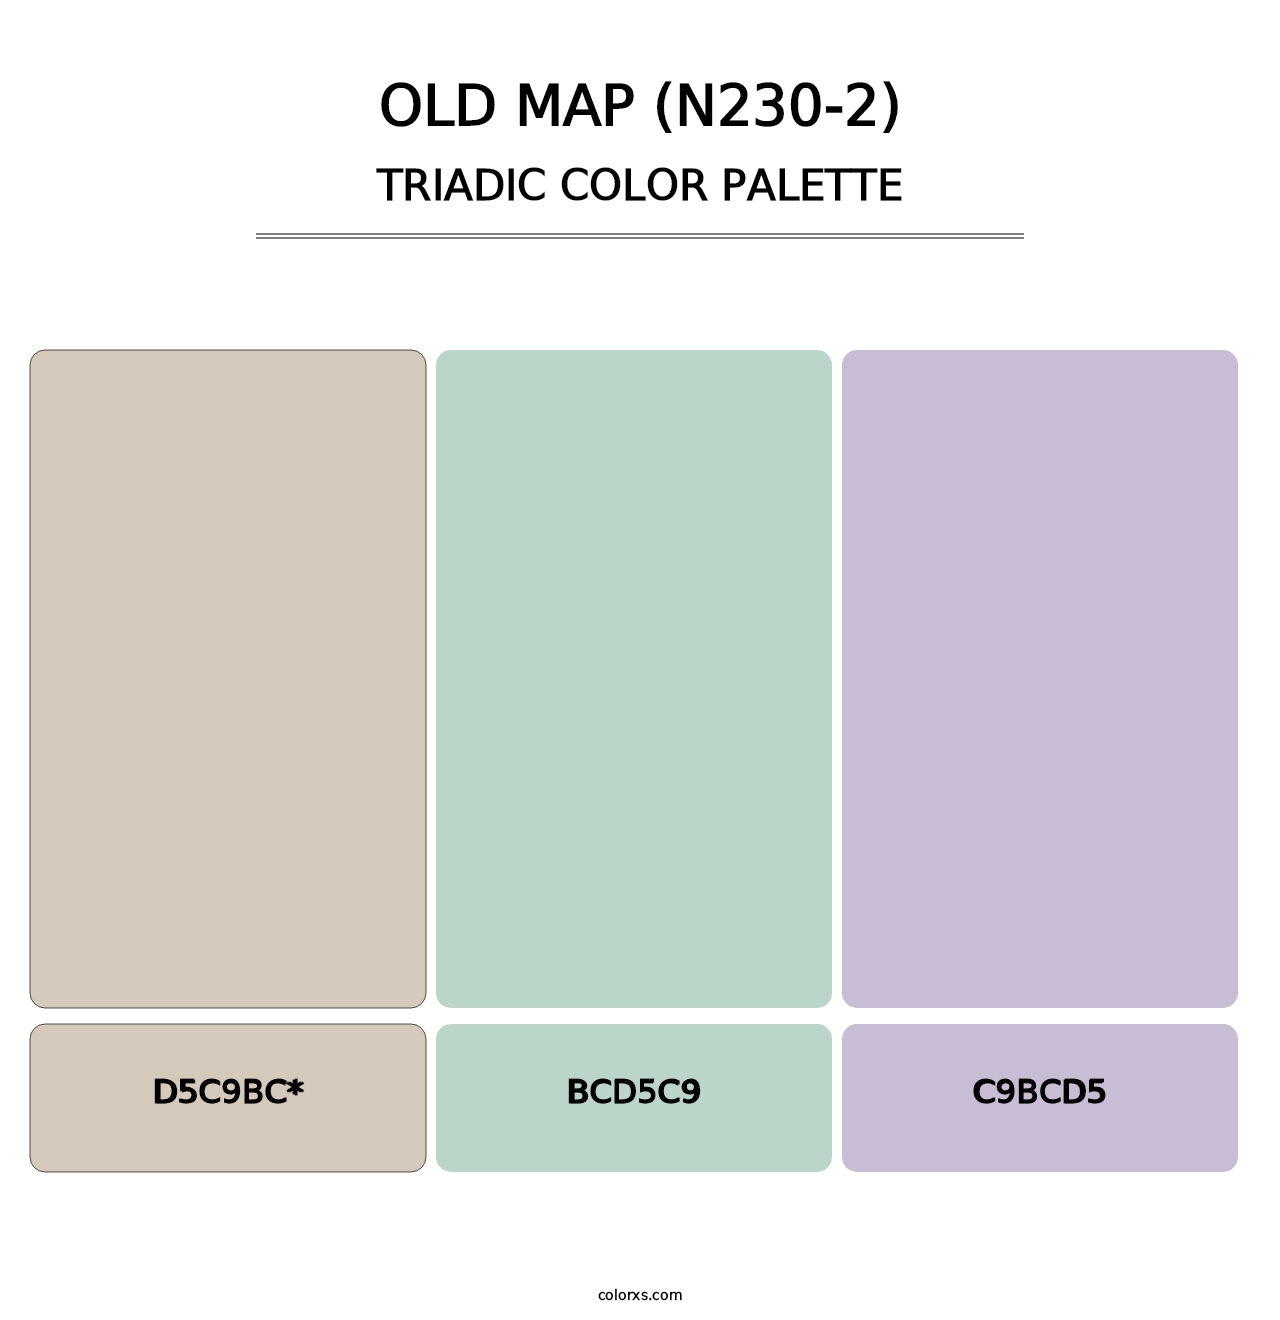 Old Map (N230-2) - Triadic Color Palette